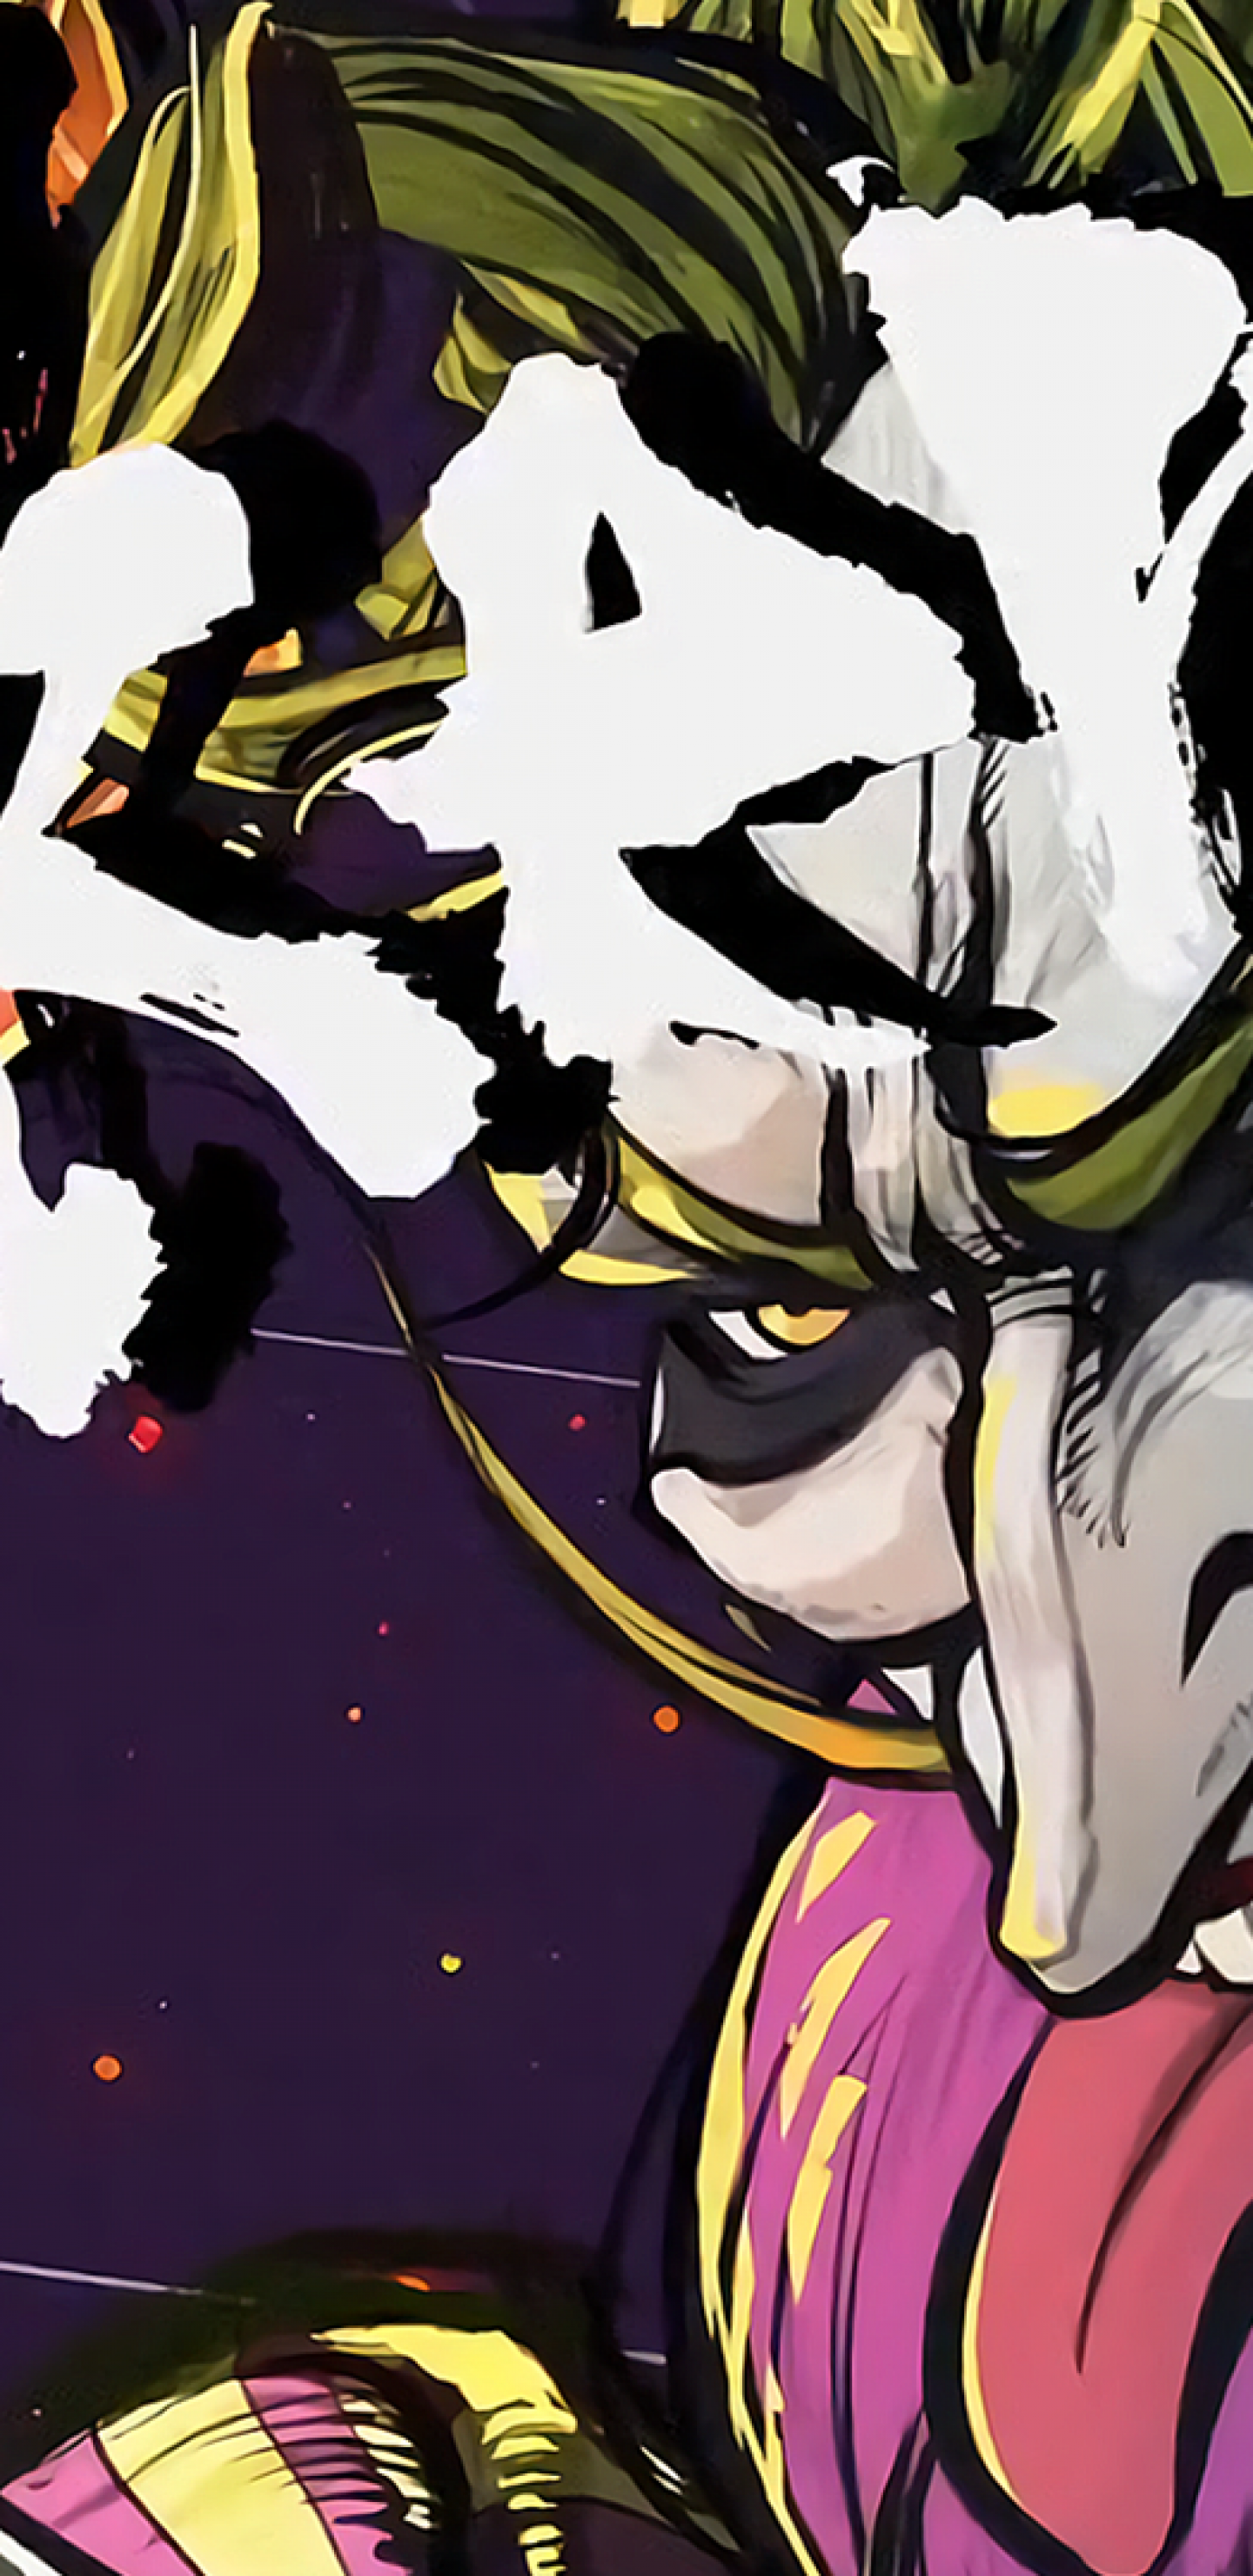 Batman Ninja, Joker, Creepy, Artwork - Batman Ninja Joker - HD Wallpaper 